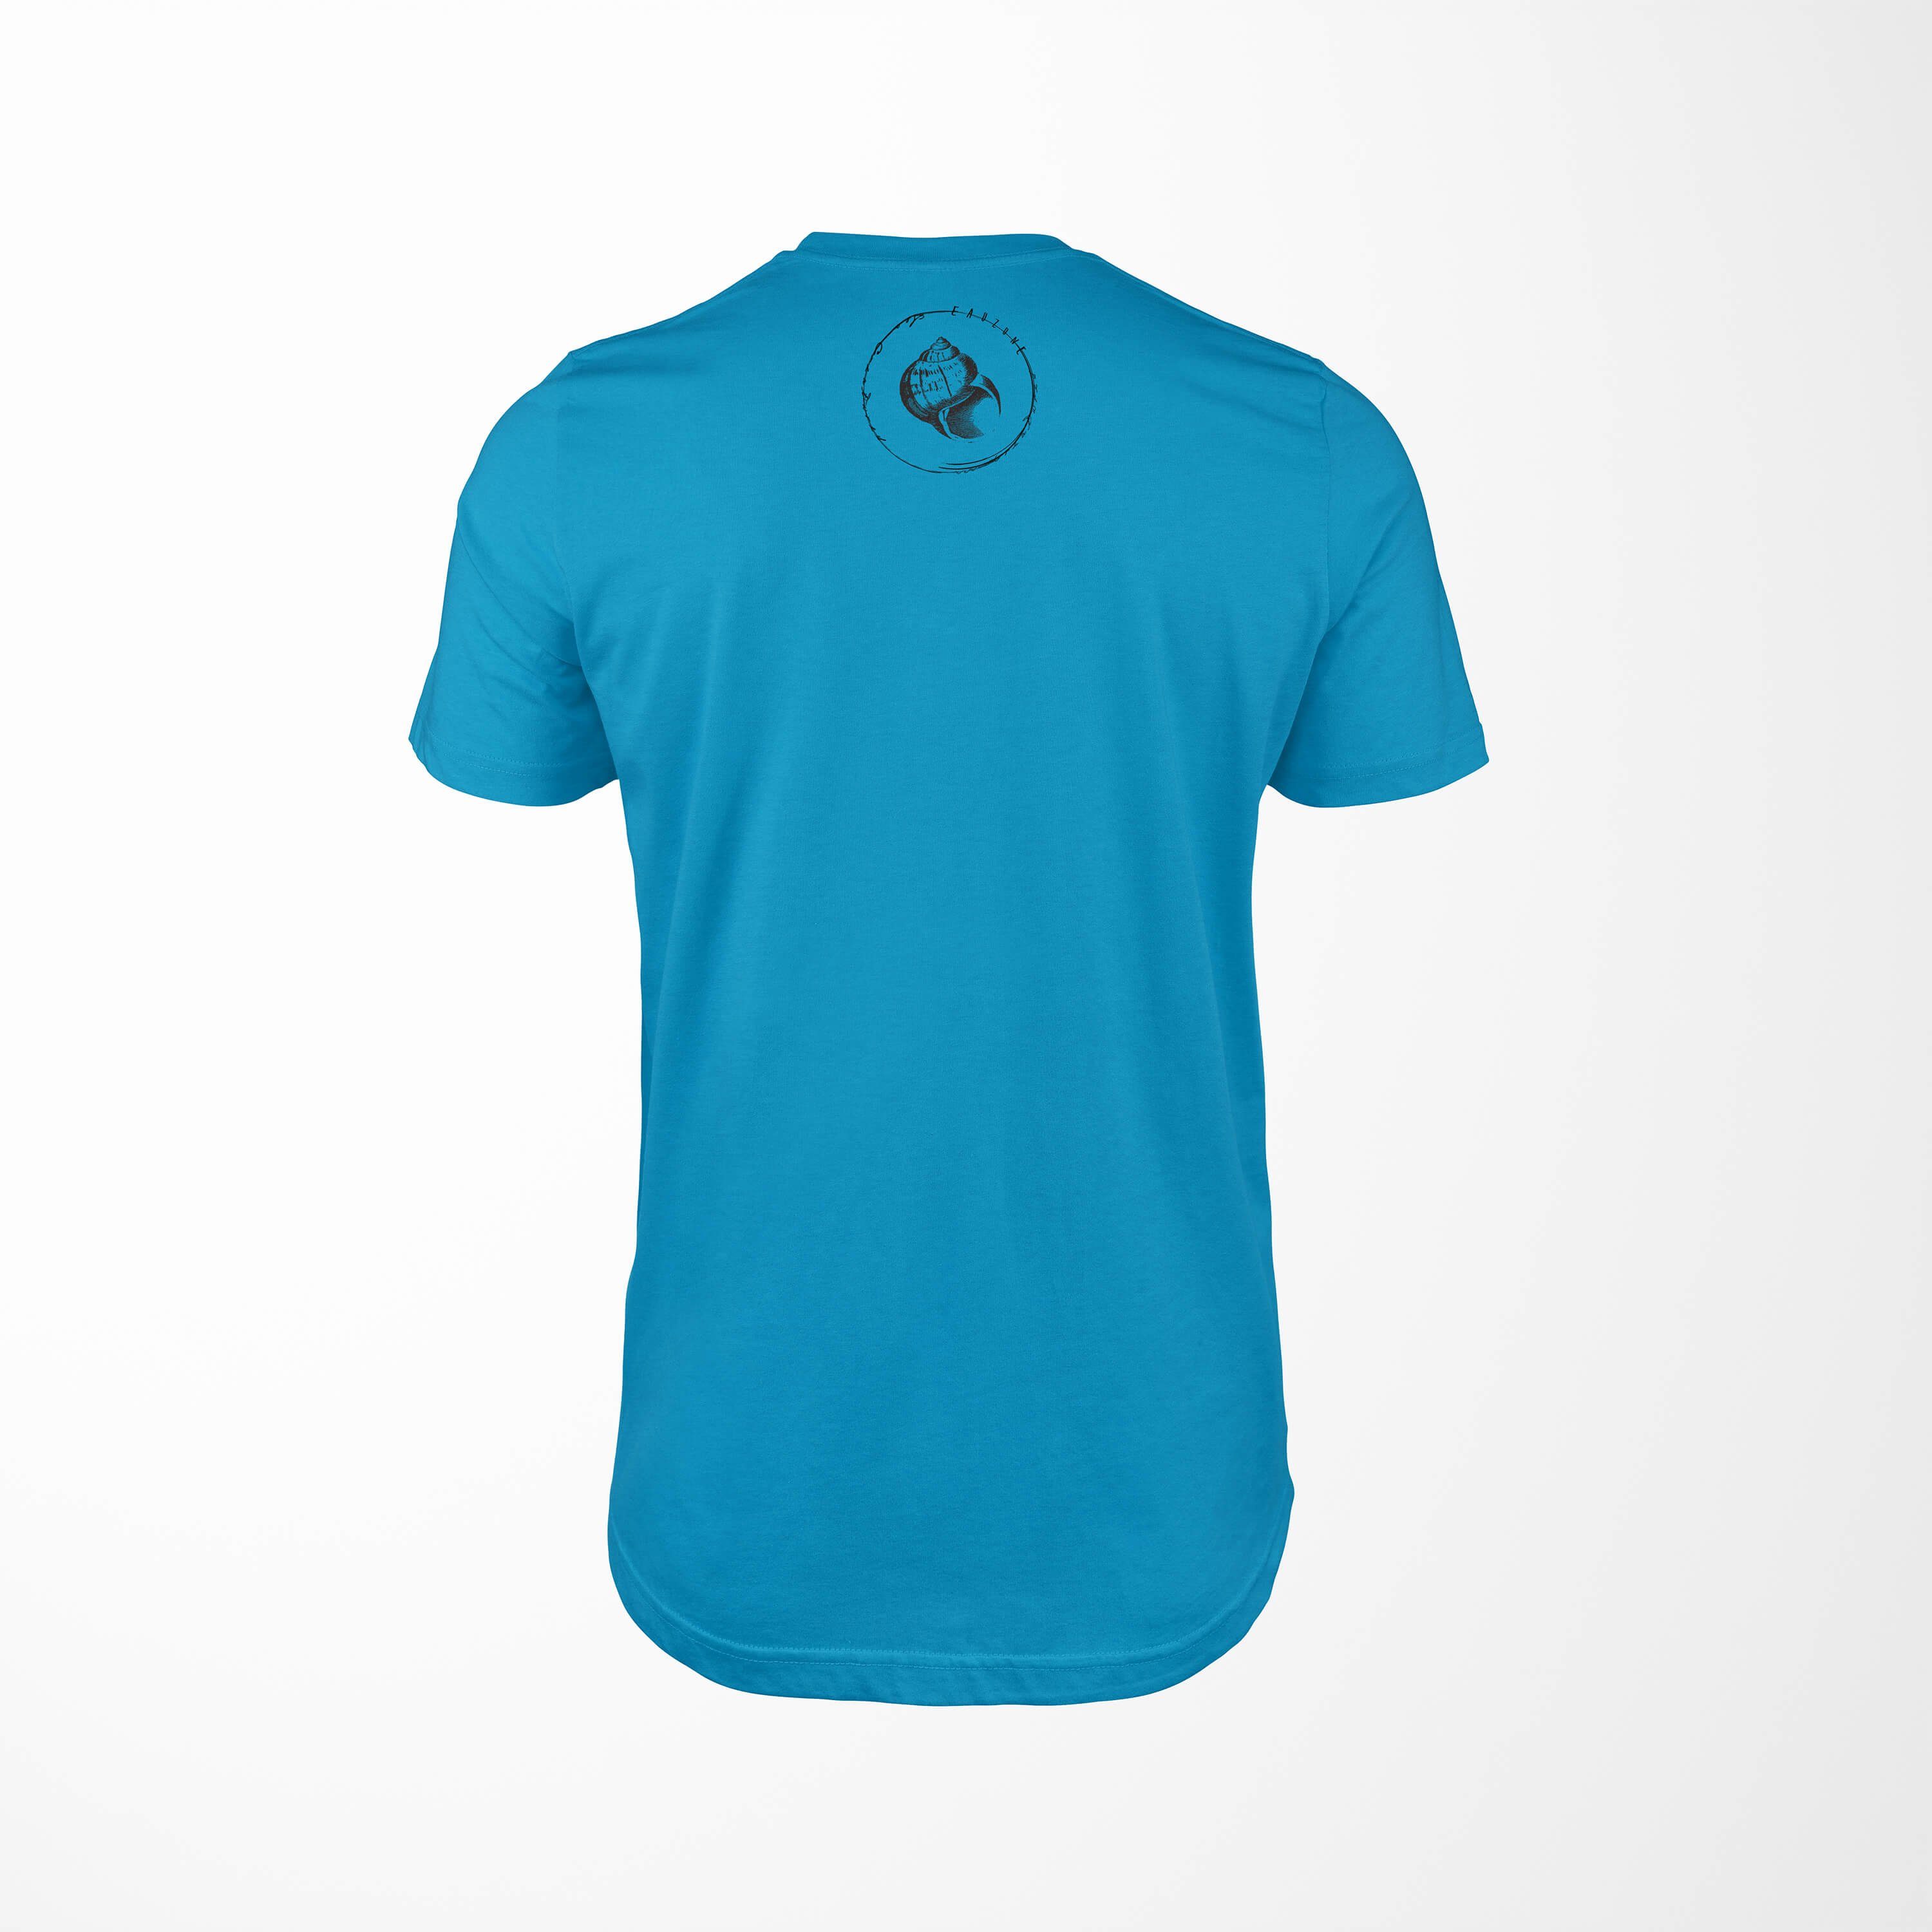 und Fische / Sea Serie: feine Tiefsee T-Shirt Struktur Creatures, Sinus - Art T-Shirt 022 sportlicher Sea Atoll Schnitt